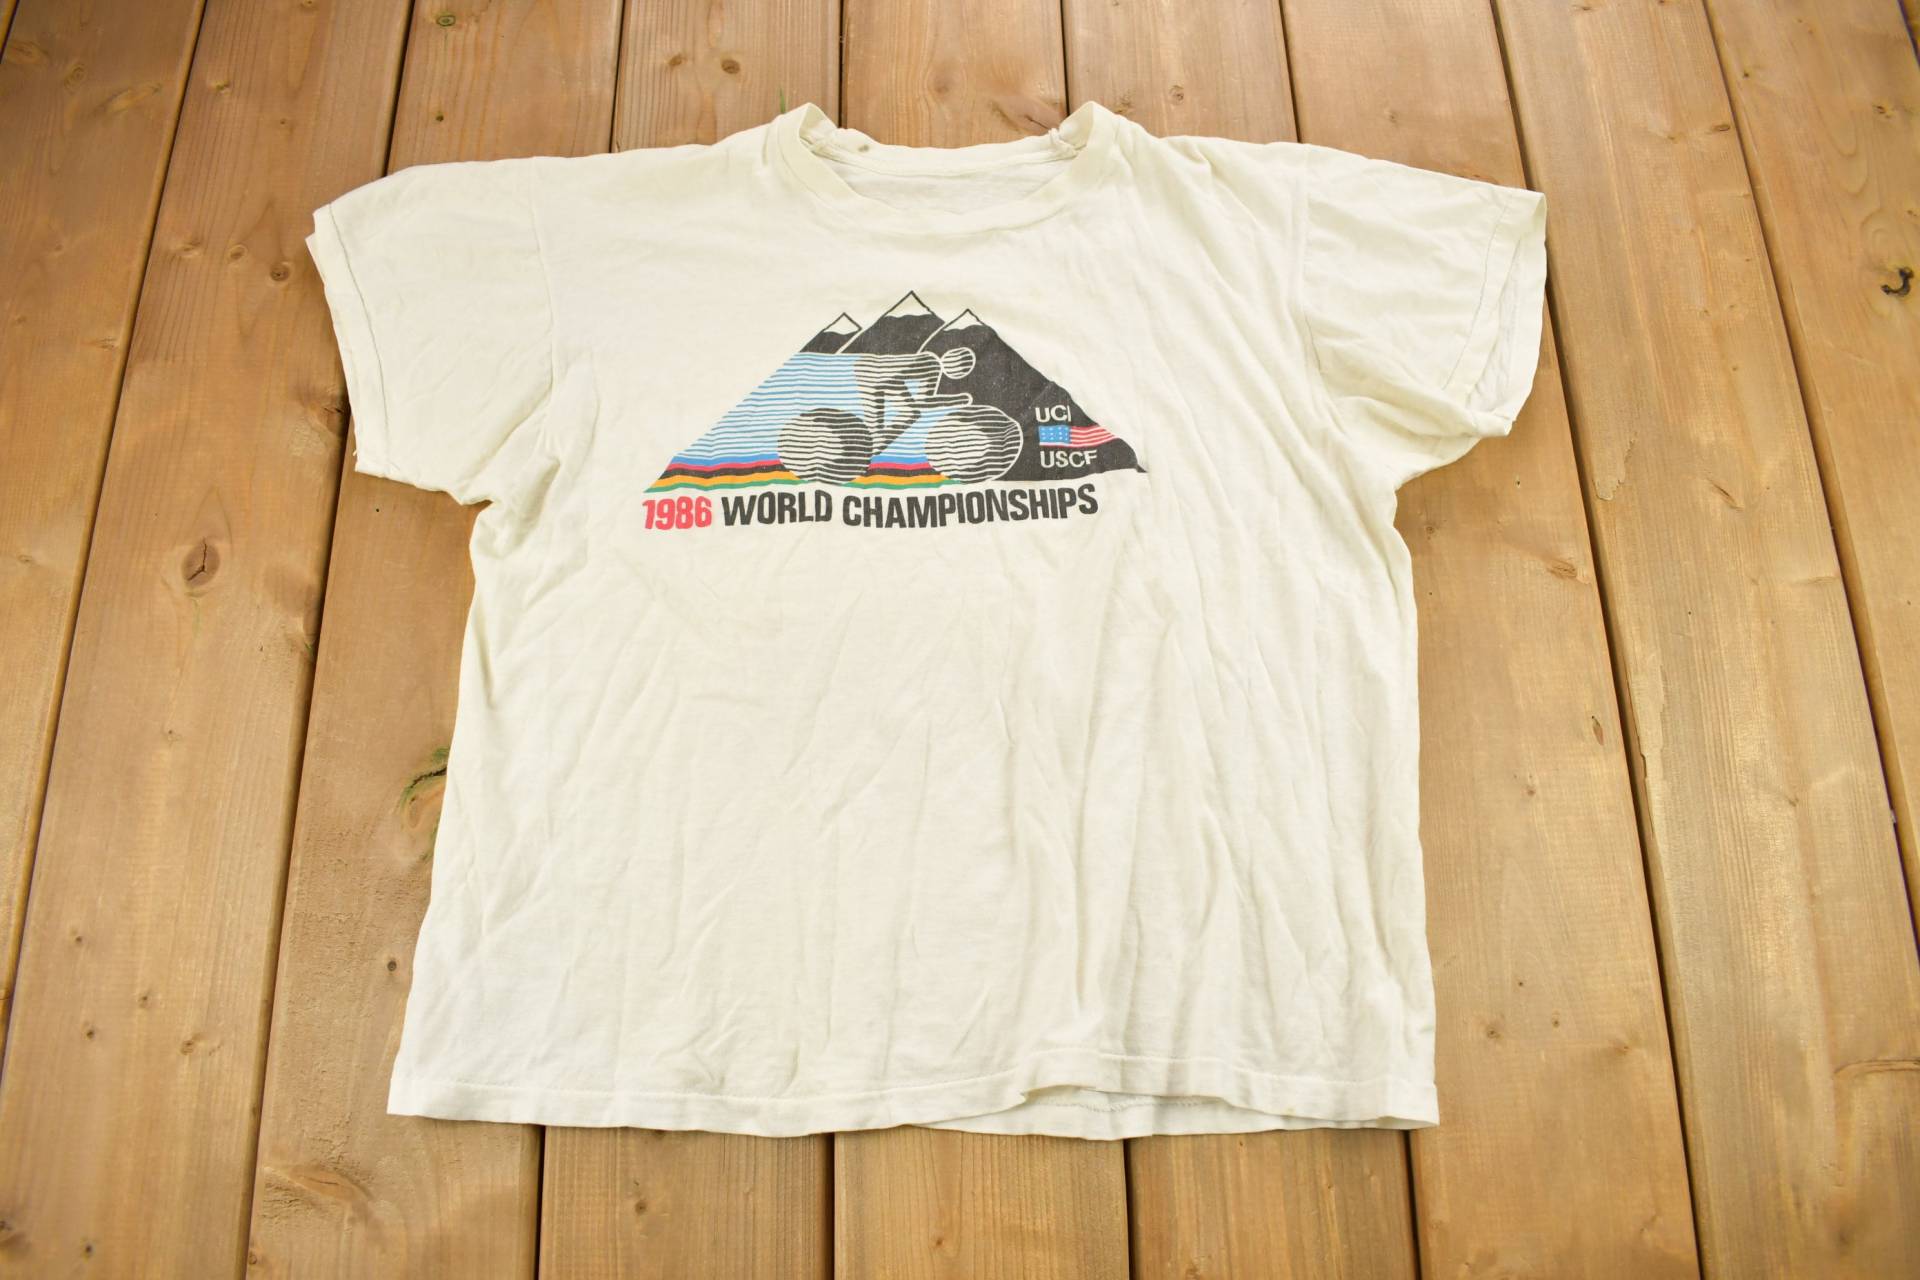 Vintage 1986 Ussf Radfahren Wm Grafik T Shirt/Streetwear T-Shirt Single Stitch Made in Usa von Lostboysvintage